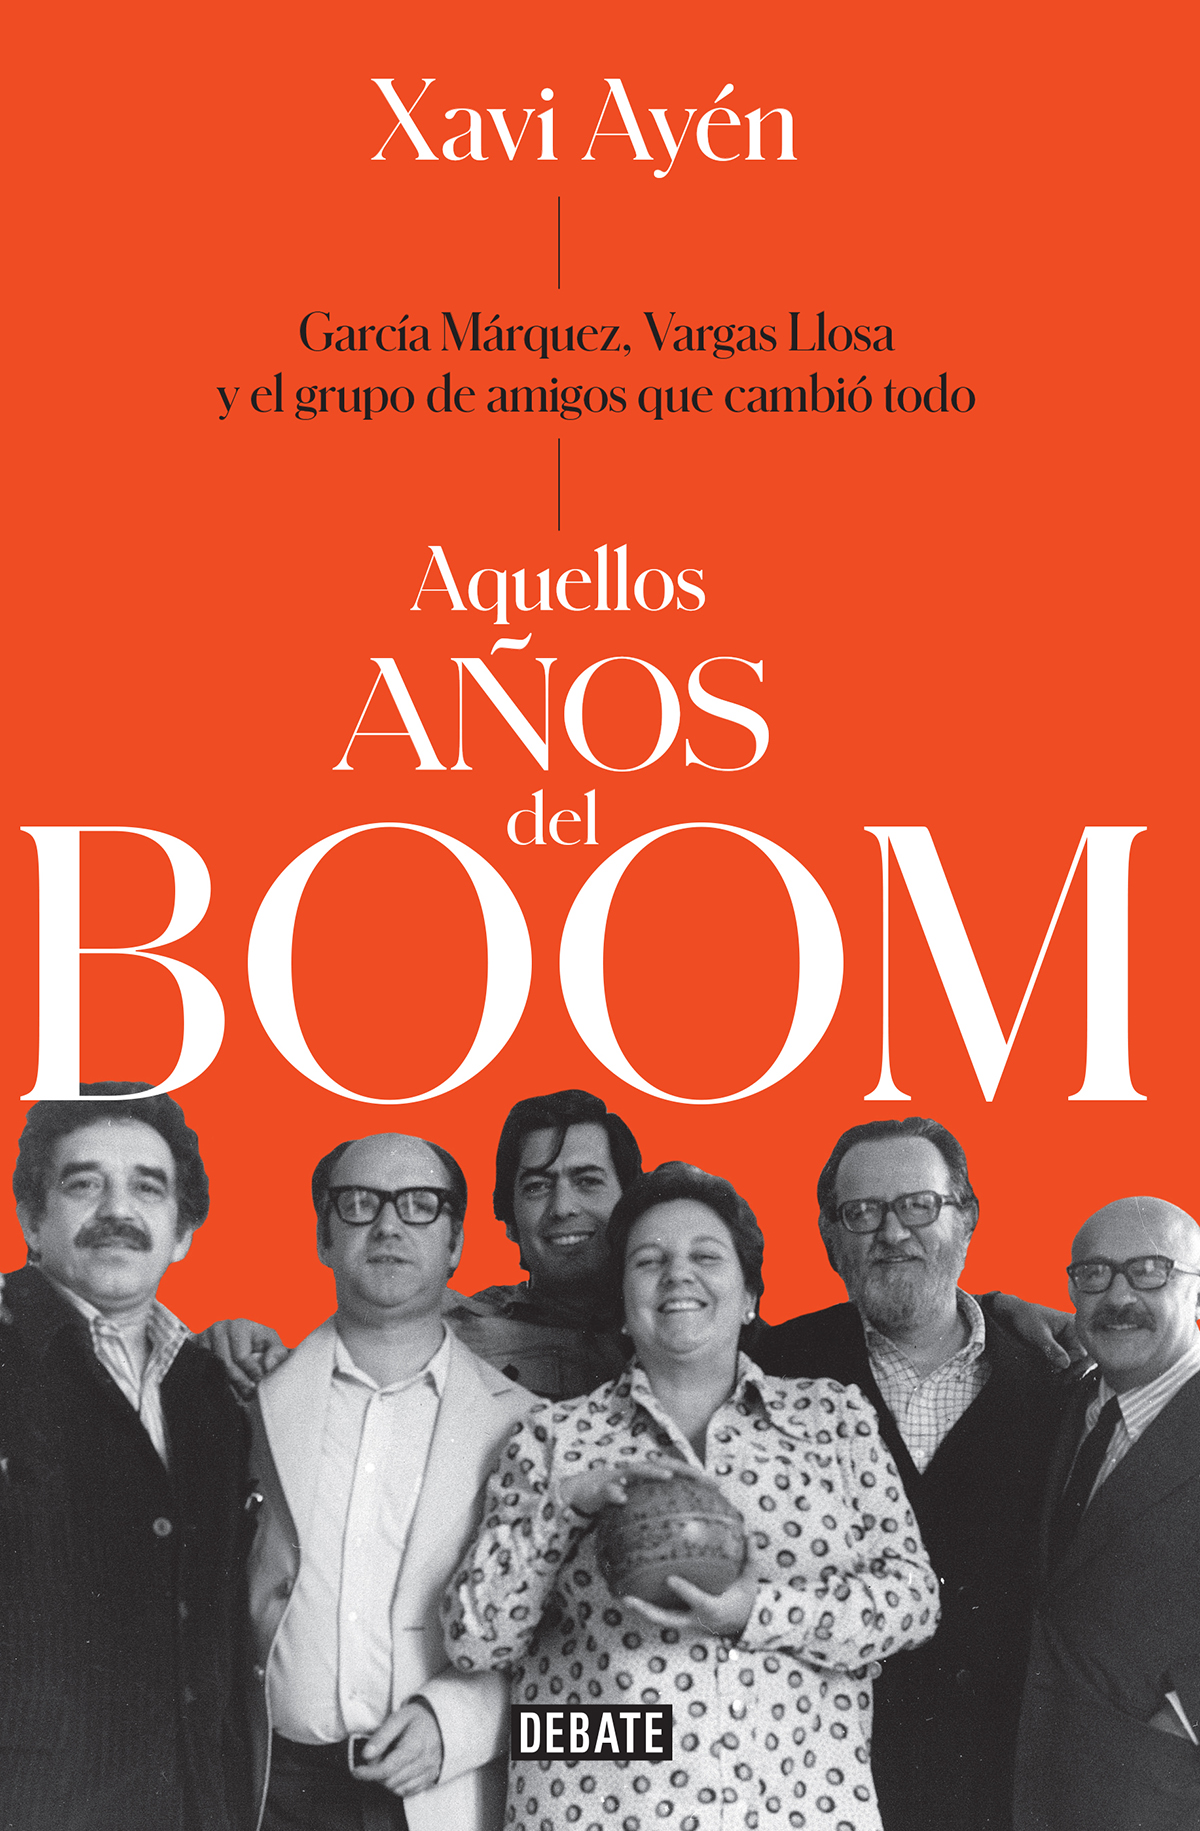 Aquellos años del boom García Márquez Vargas Llosa y el grupo de amigos que lo cambiaron todo - image 1